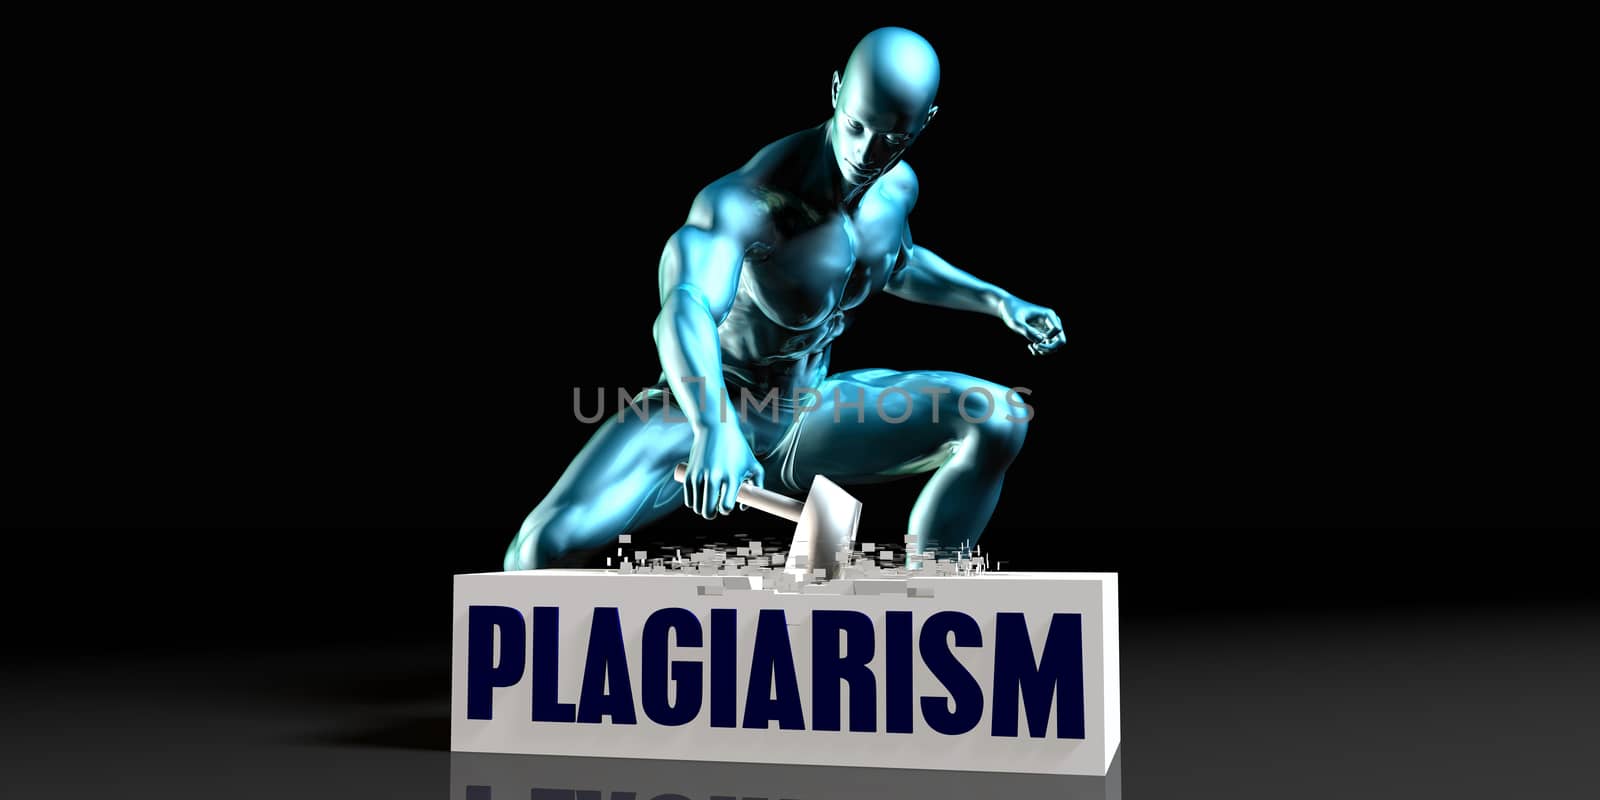 Get Rid of Plagiarism by kentoh